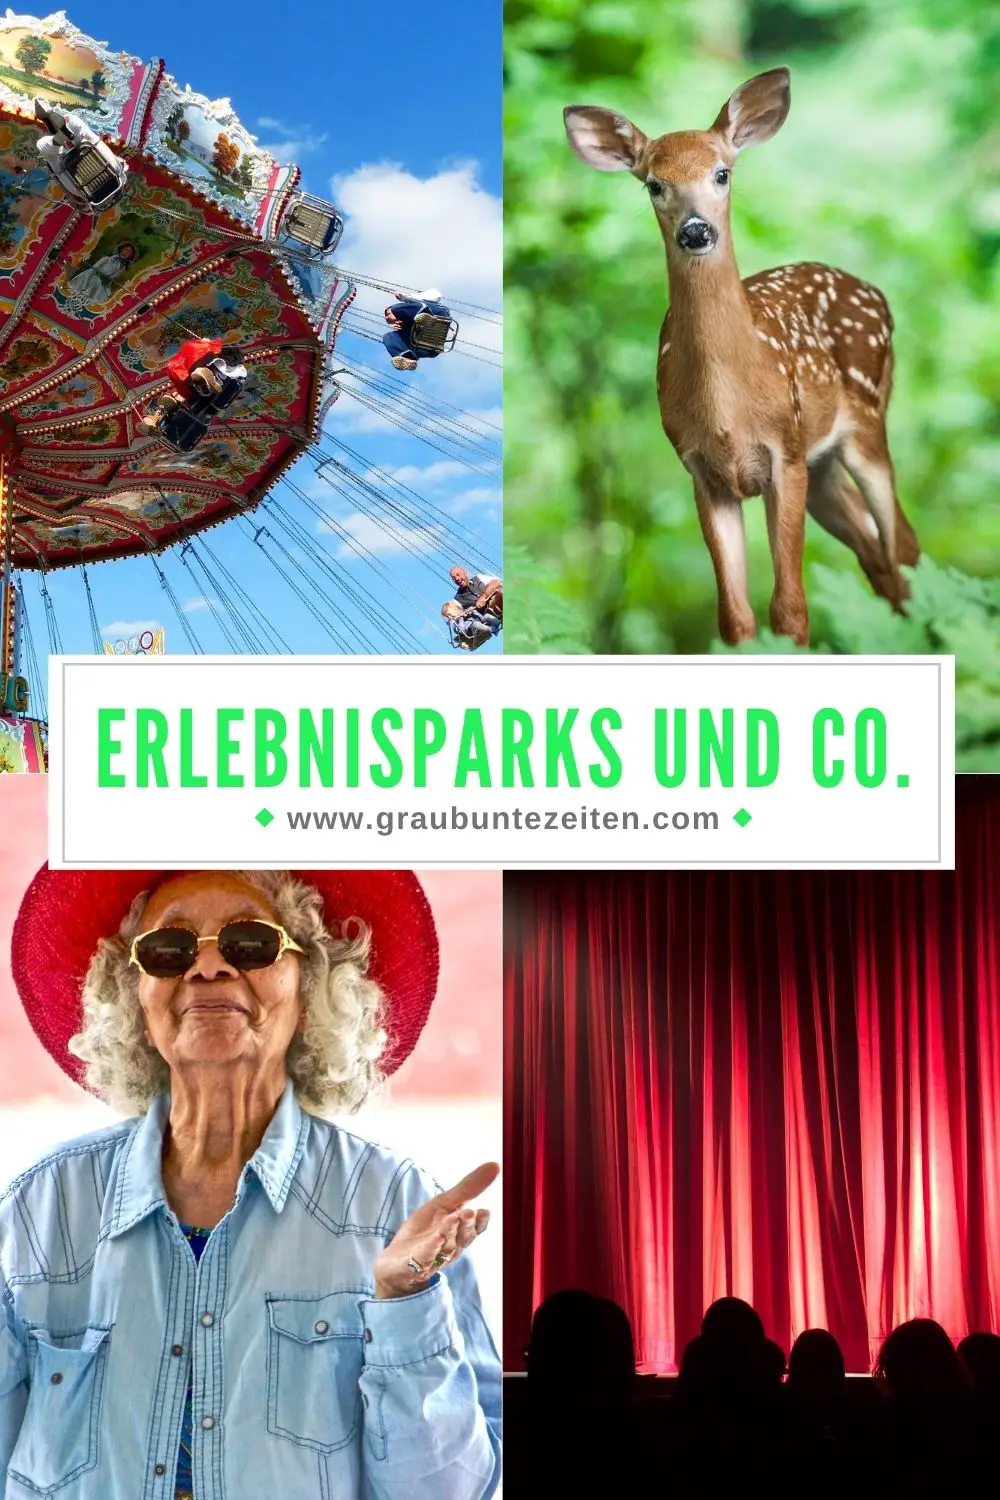 Rabatte für Rentner - Erlebnisparks und Co.